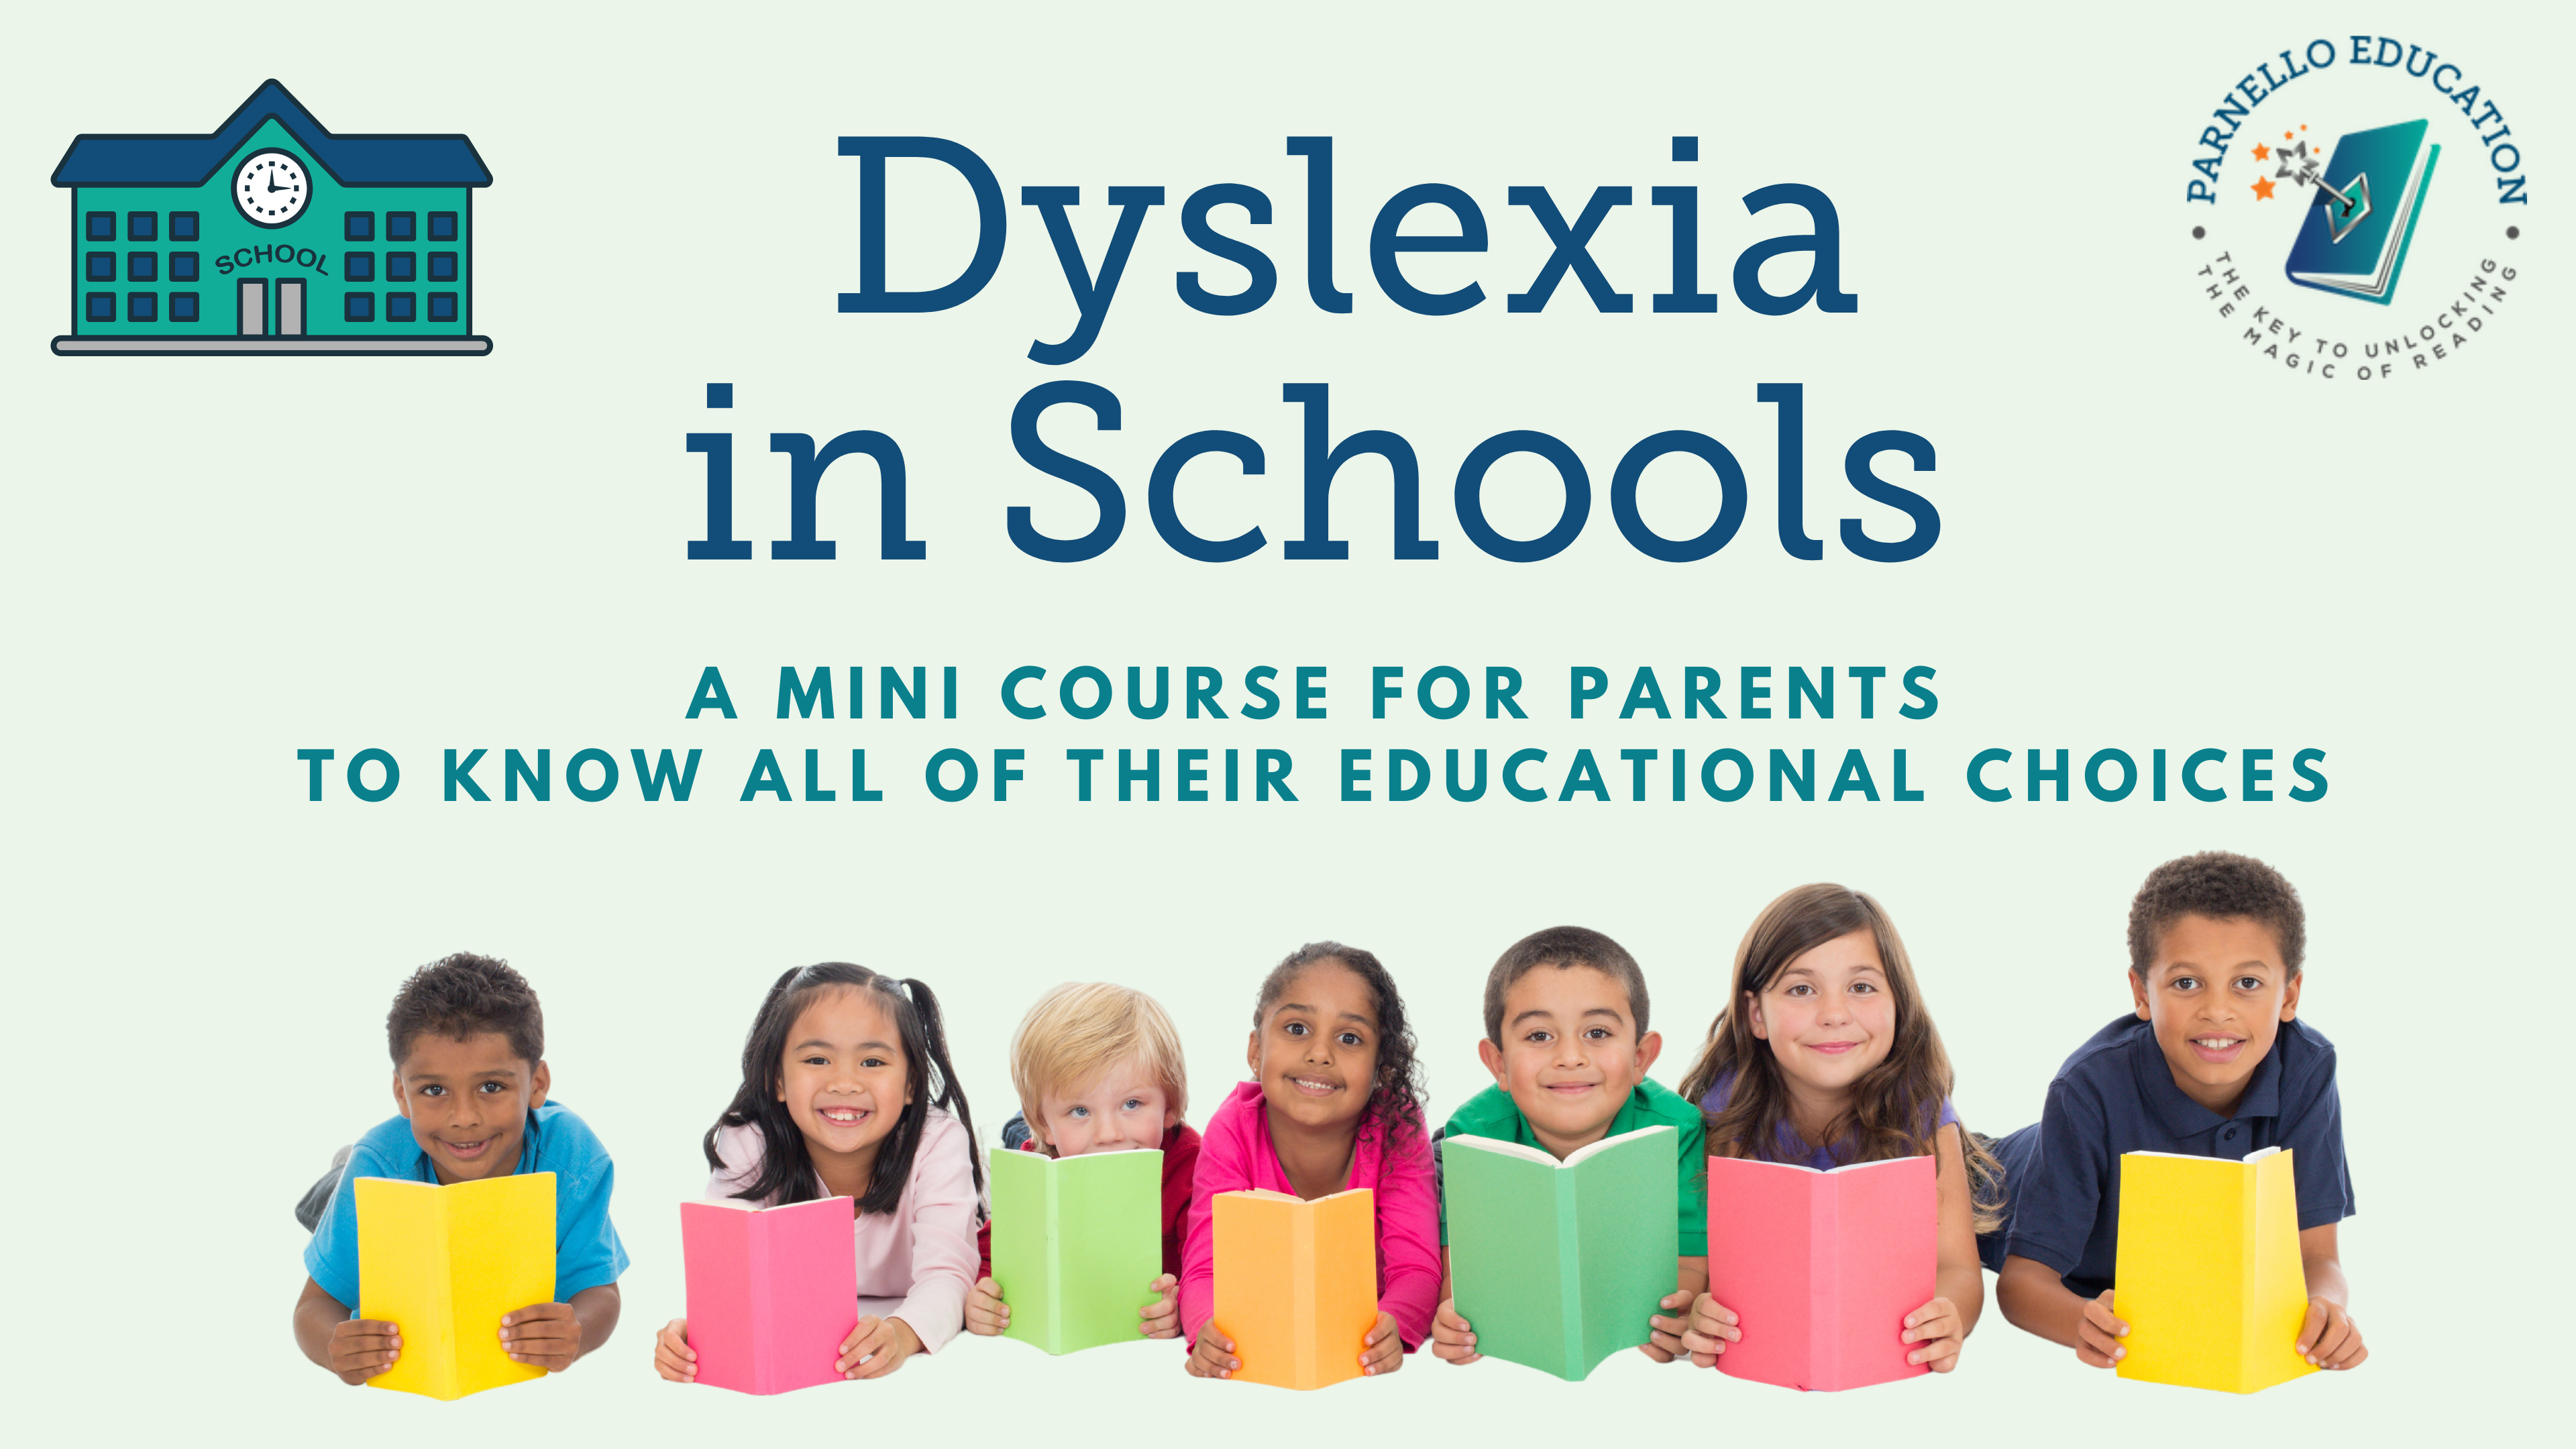 Dyslexia in School Mini Course Image